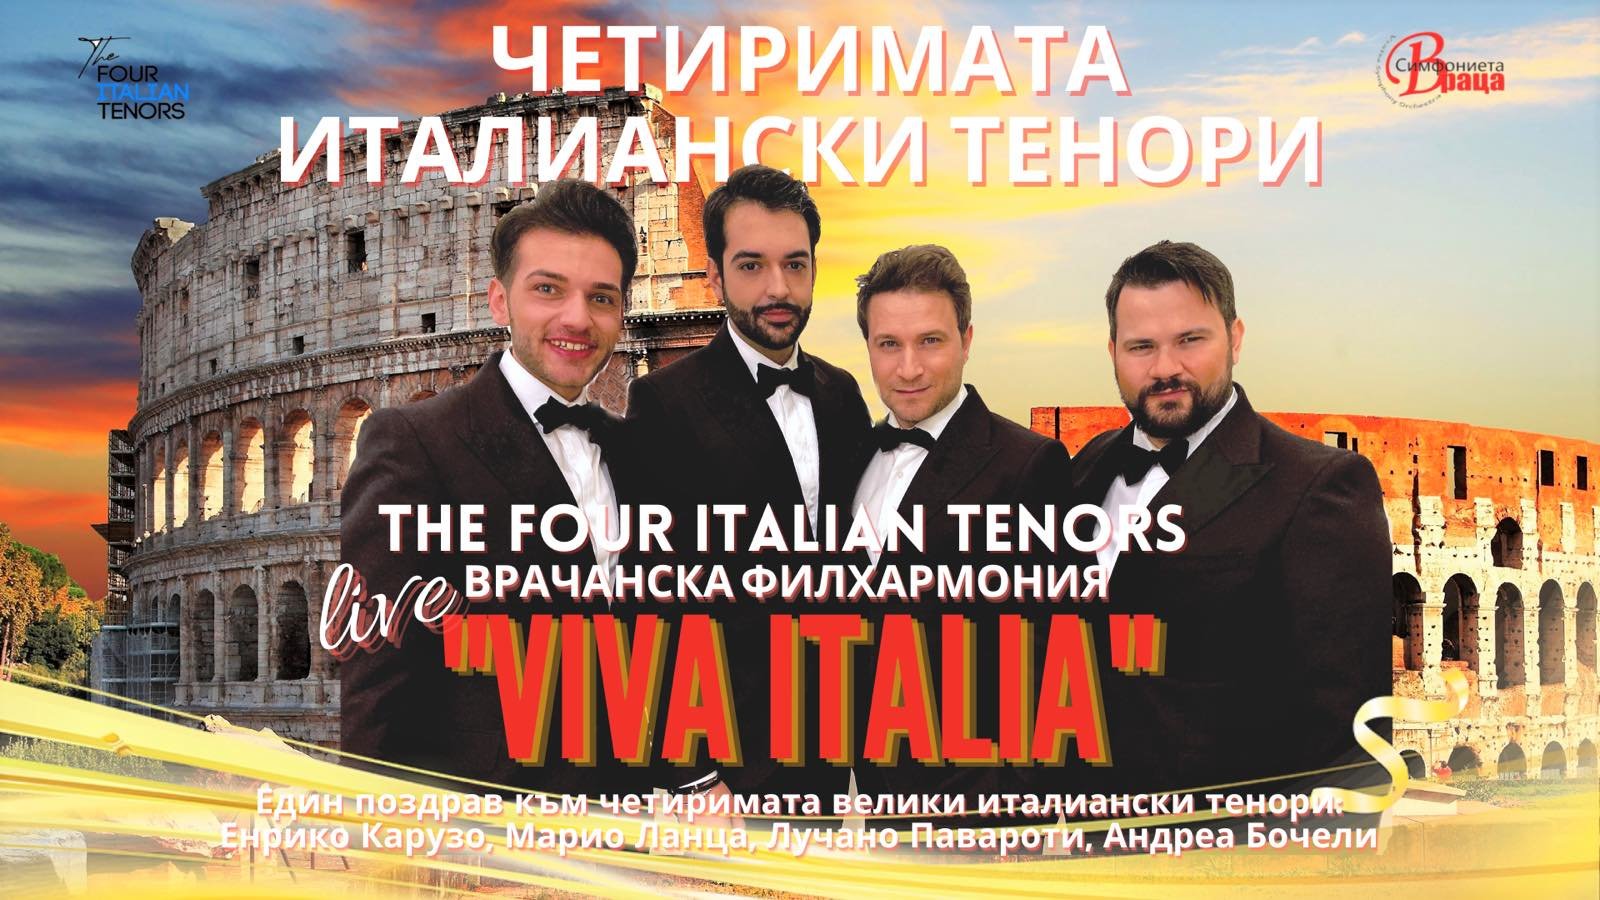 Концерт-спектакълът VIVA ITALIA“ ще бъде представен тази вечер в София.